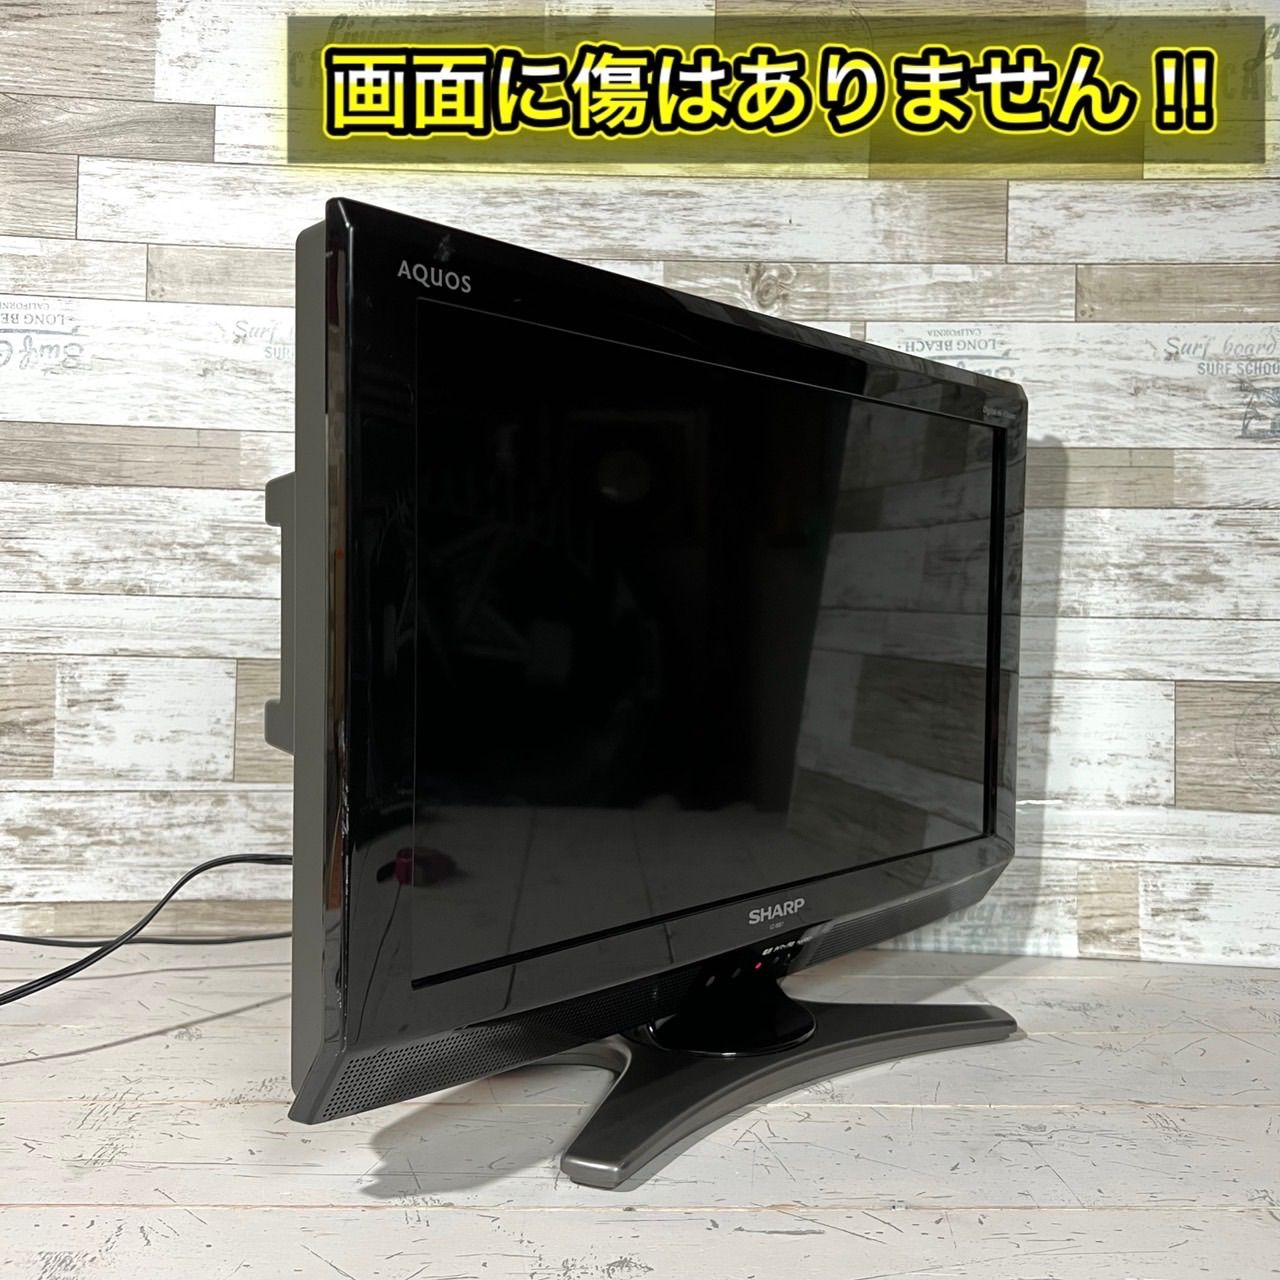 すぐ見れる‼️】SHARP AQUOS 液晶テレビ 20型✨ PC入力可能